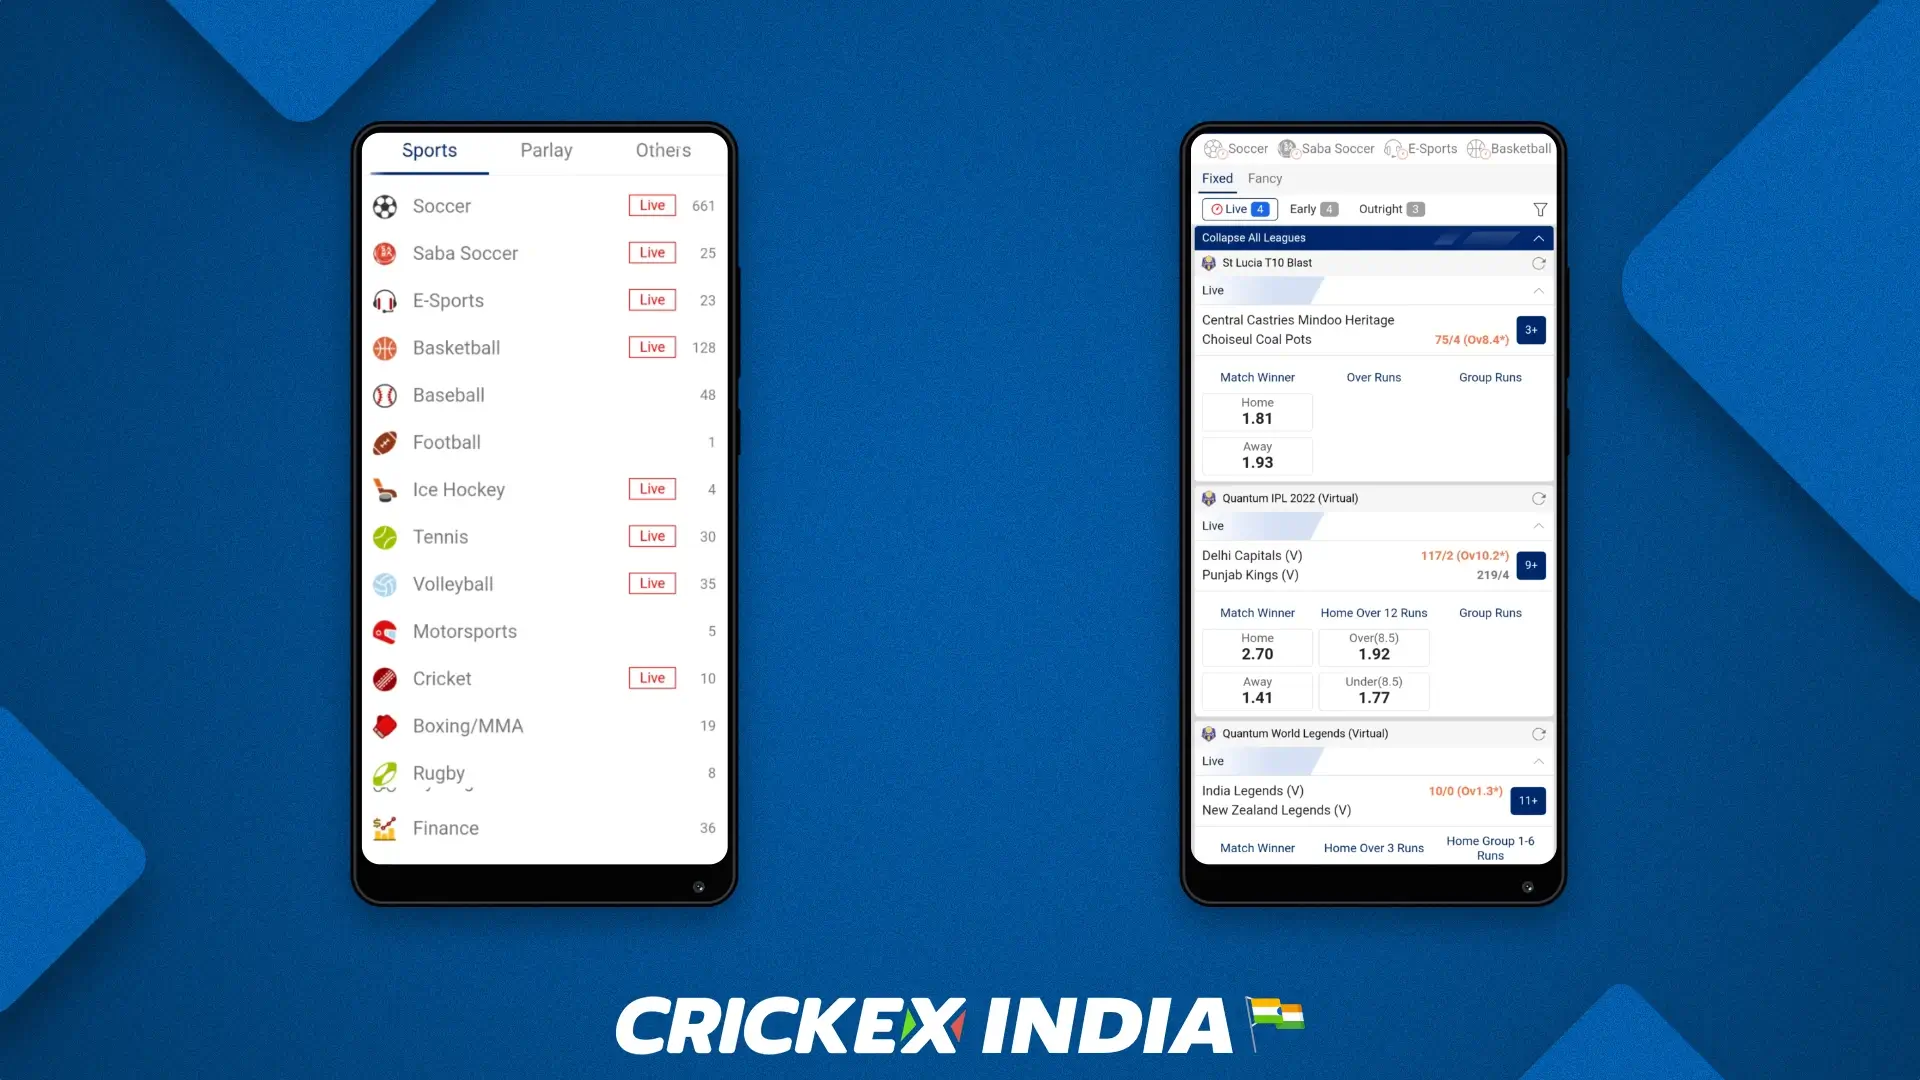 Crickex ऐप विभिन्न प्रकार के खेल प्रदान करता है जिन पर आप दांव लगा सकते हैं, जिसमें क्रिकेट, टेनिस, सॉकर, और बहुत कुछ शामिल हैं